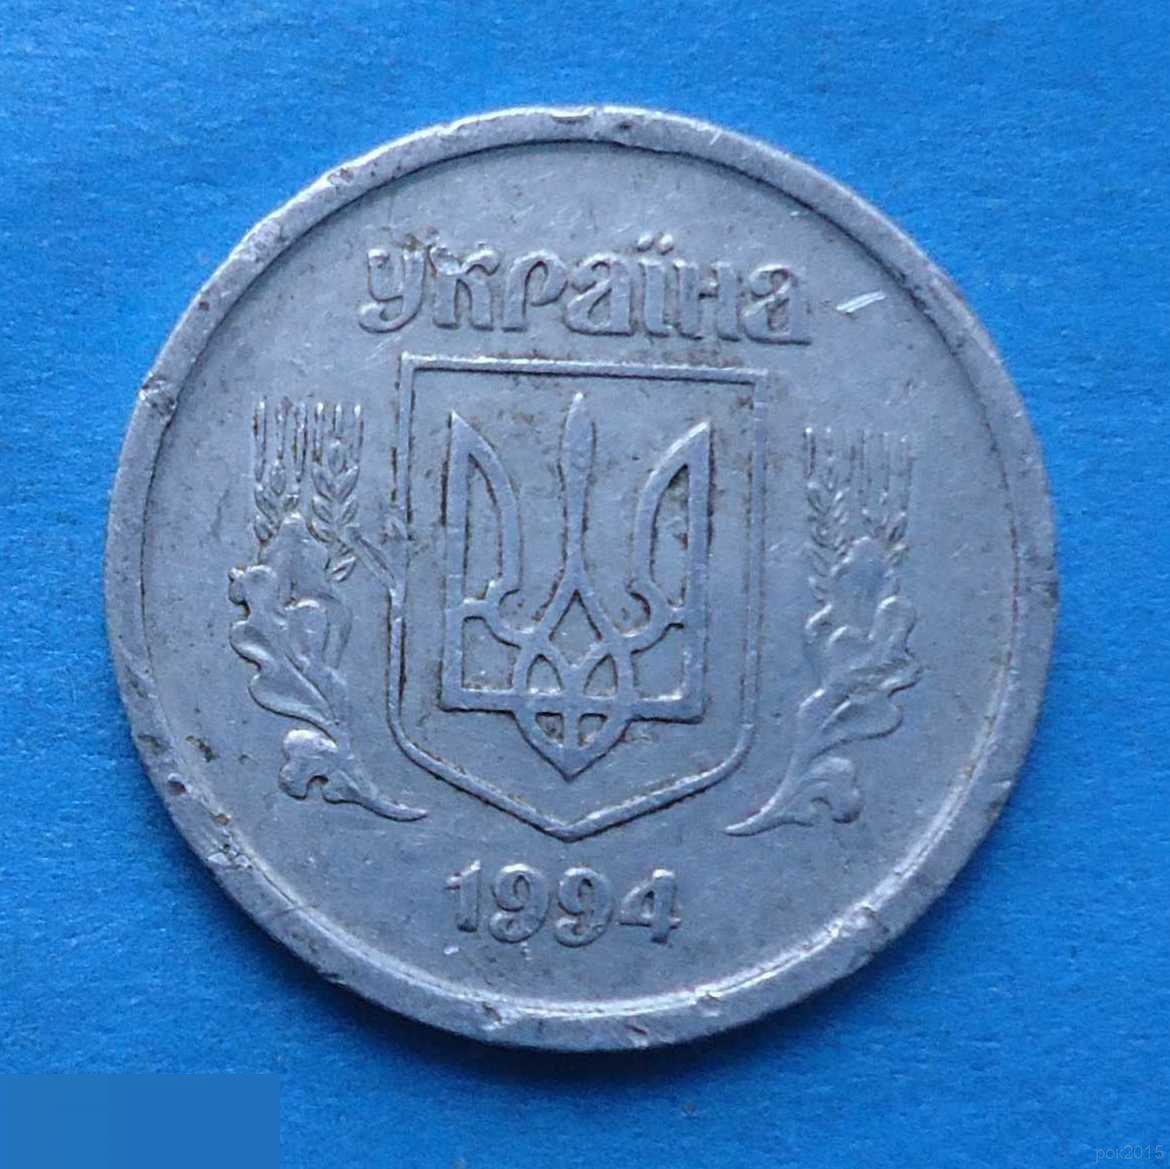 2 копейки 1994 года Украина 1